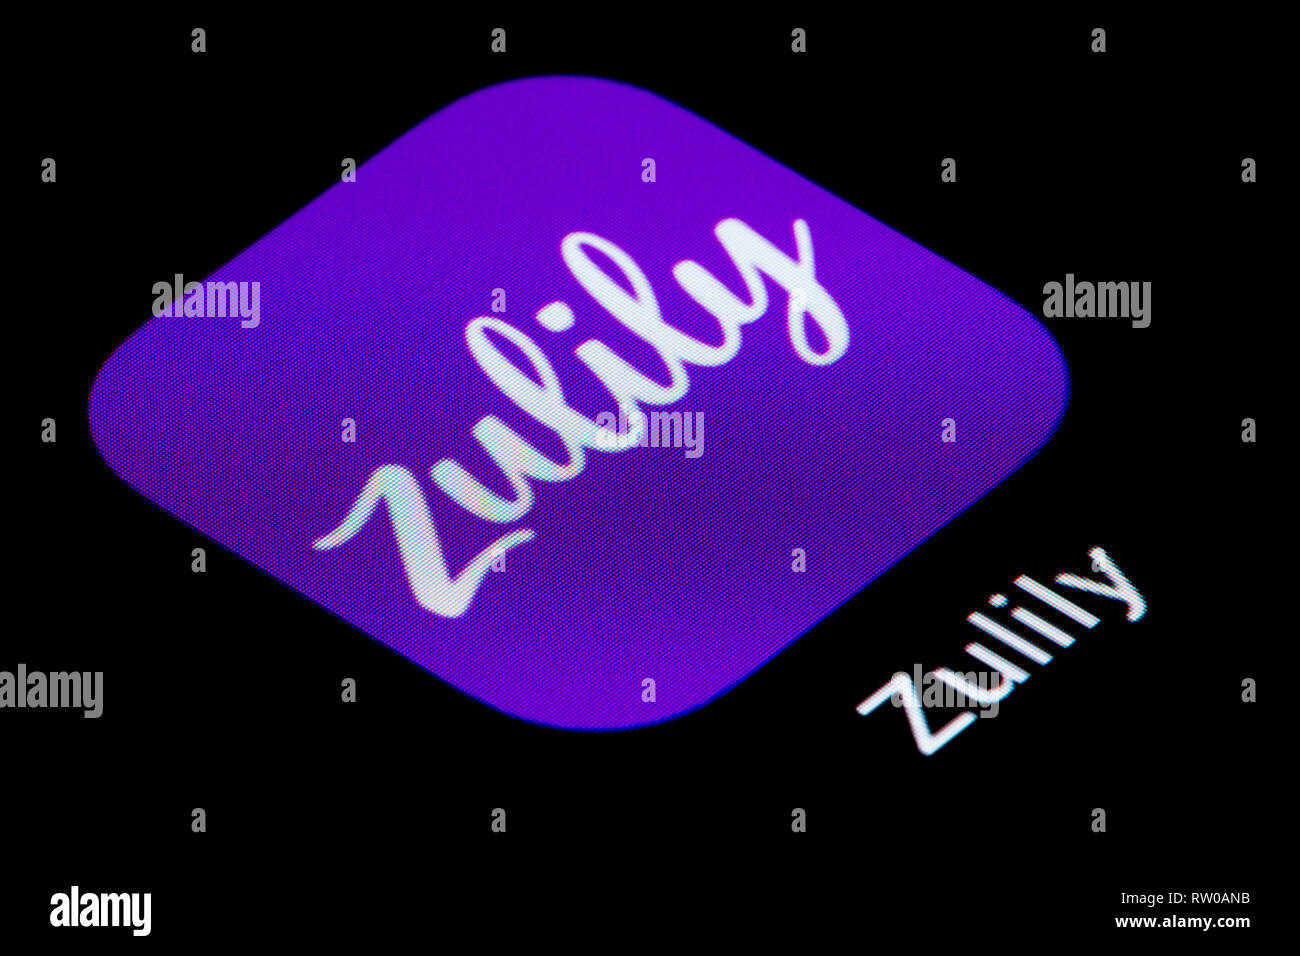 Eine Nahaufnahme des Zulily app Symbol, wie auf dem Bildschirm eines Smartphones (nur redaktionelle Nutzung) Stockfoto